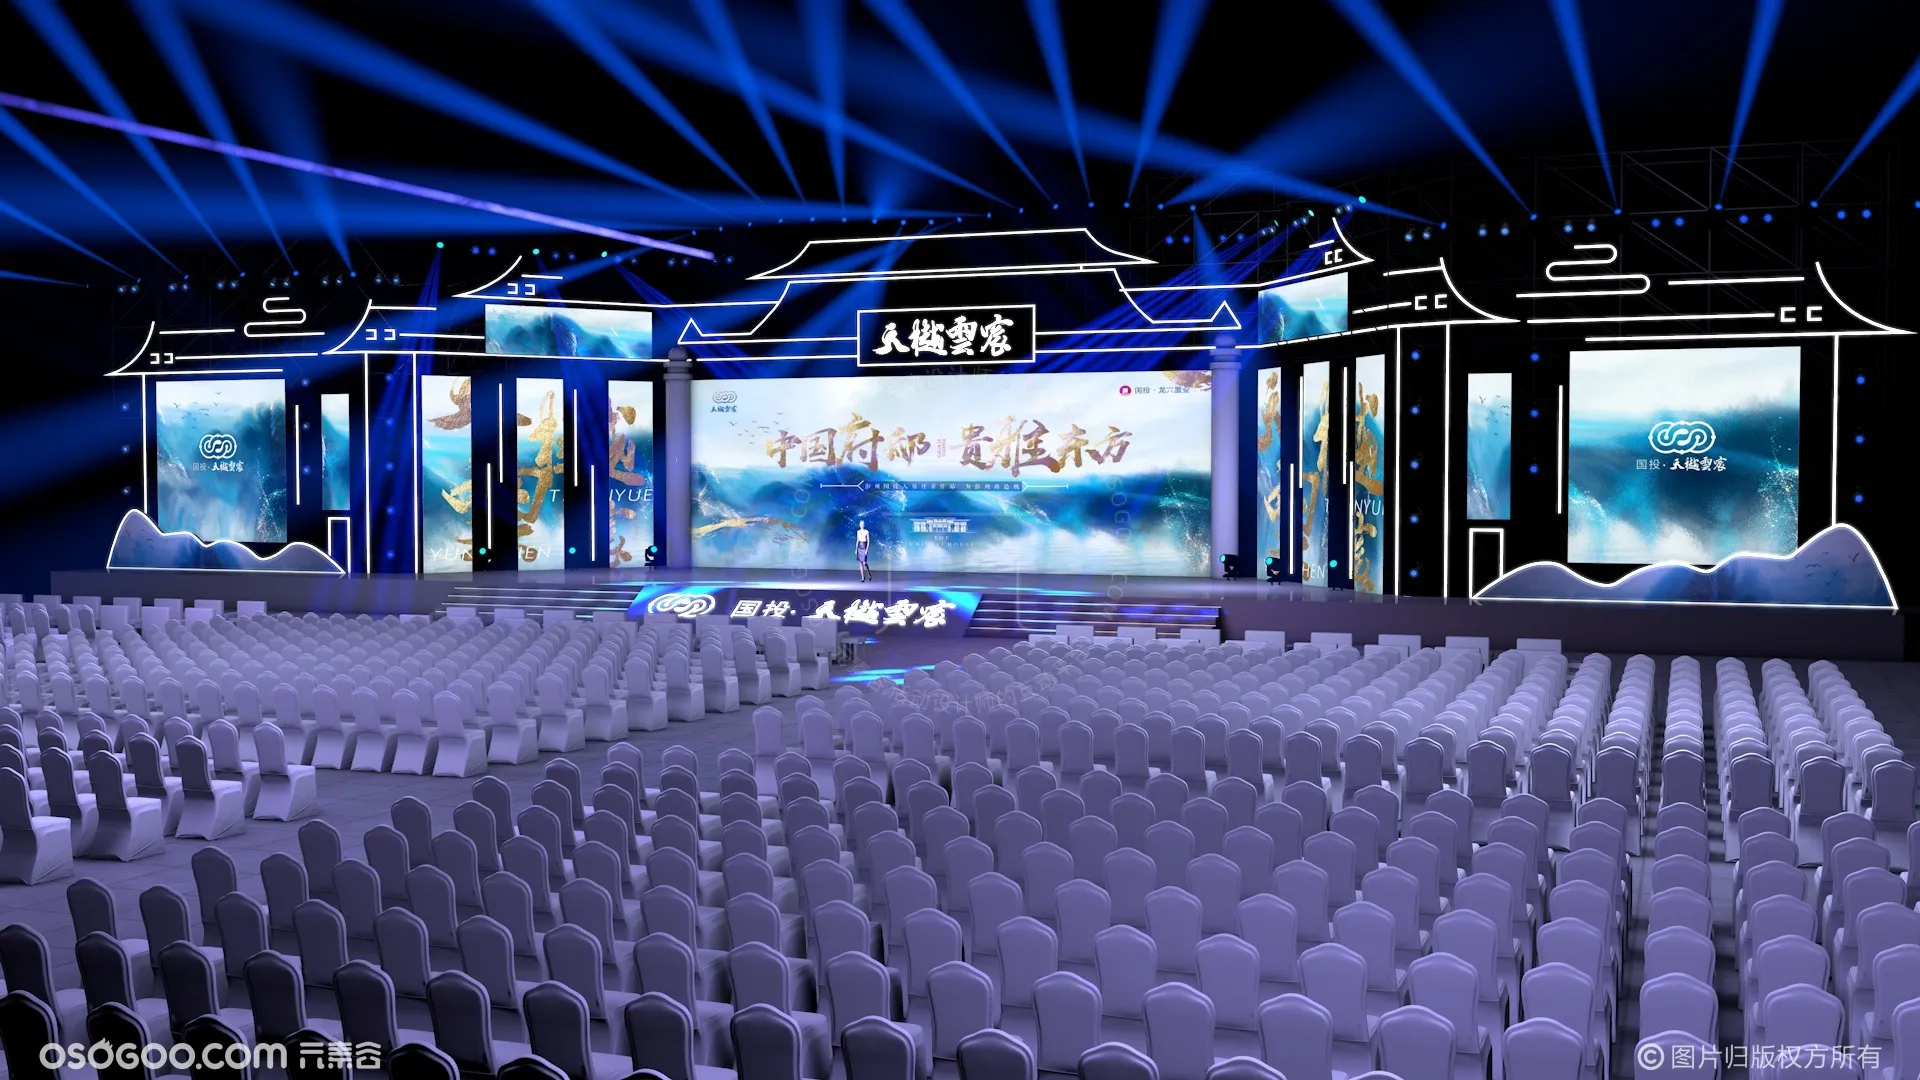 大型演唱会舞台舞美效果图3D